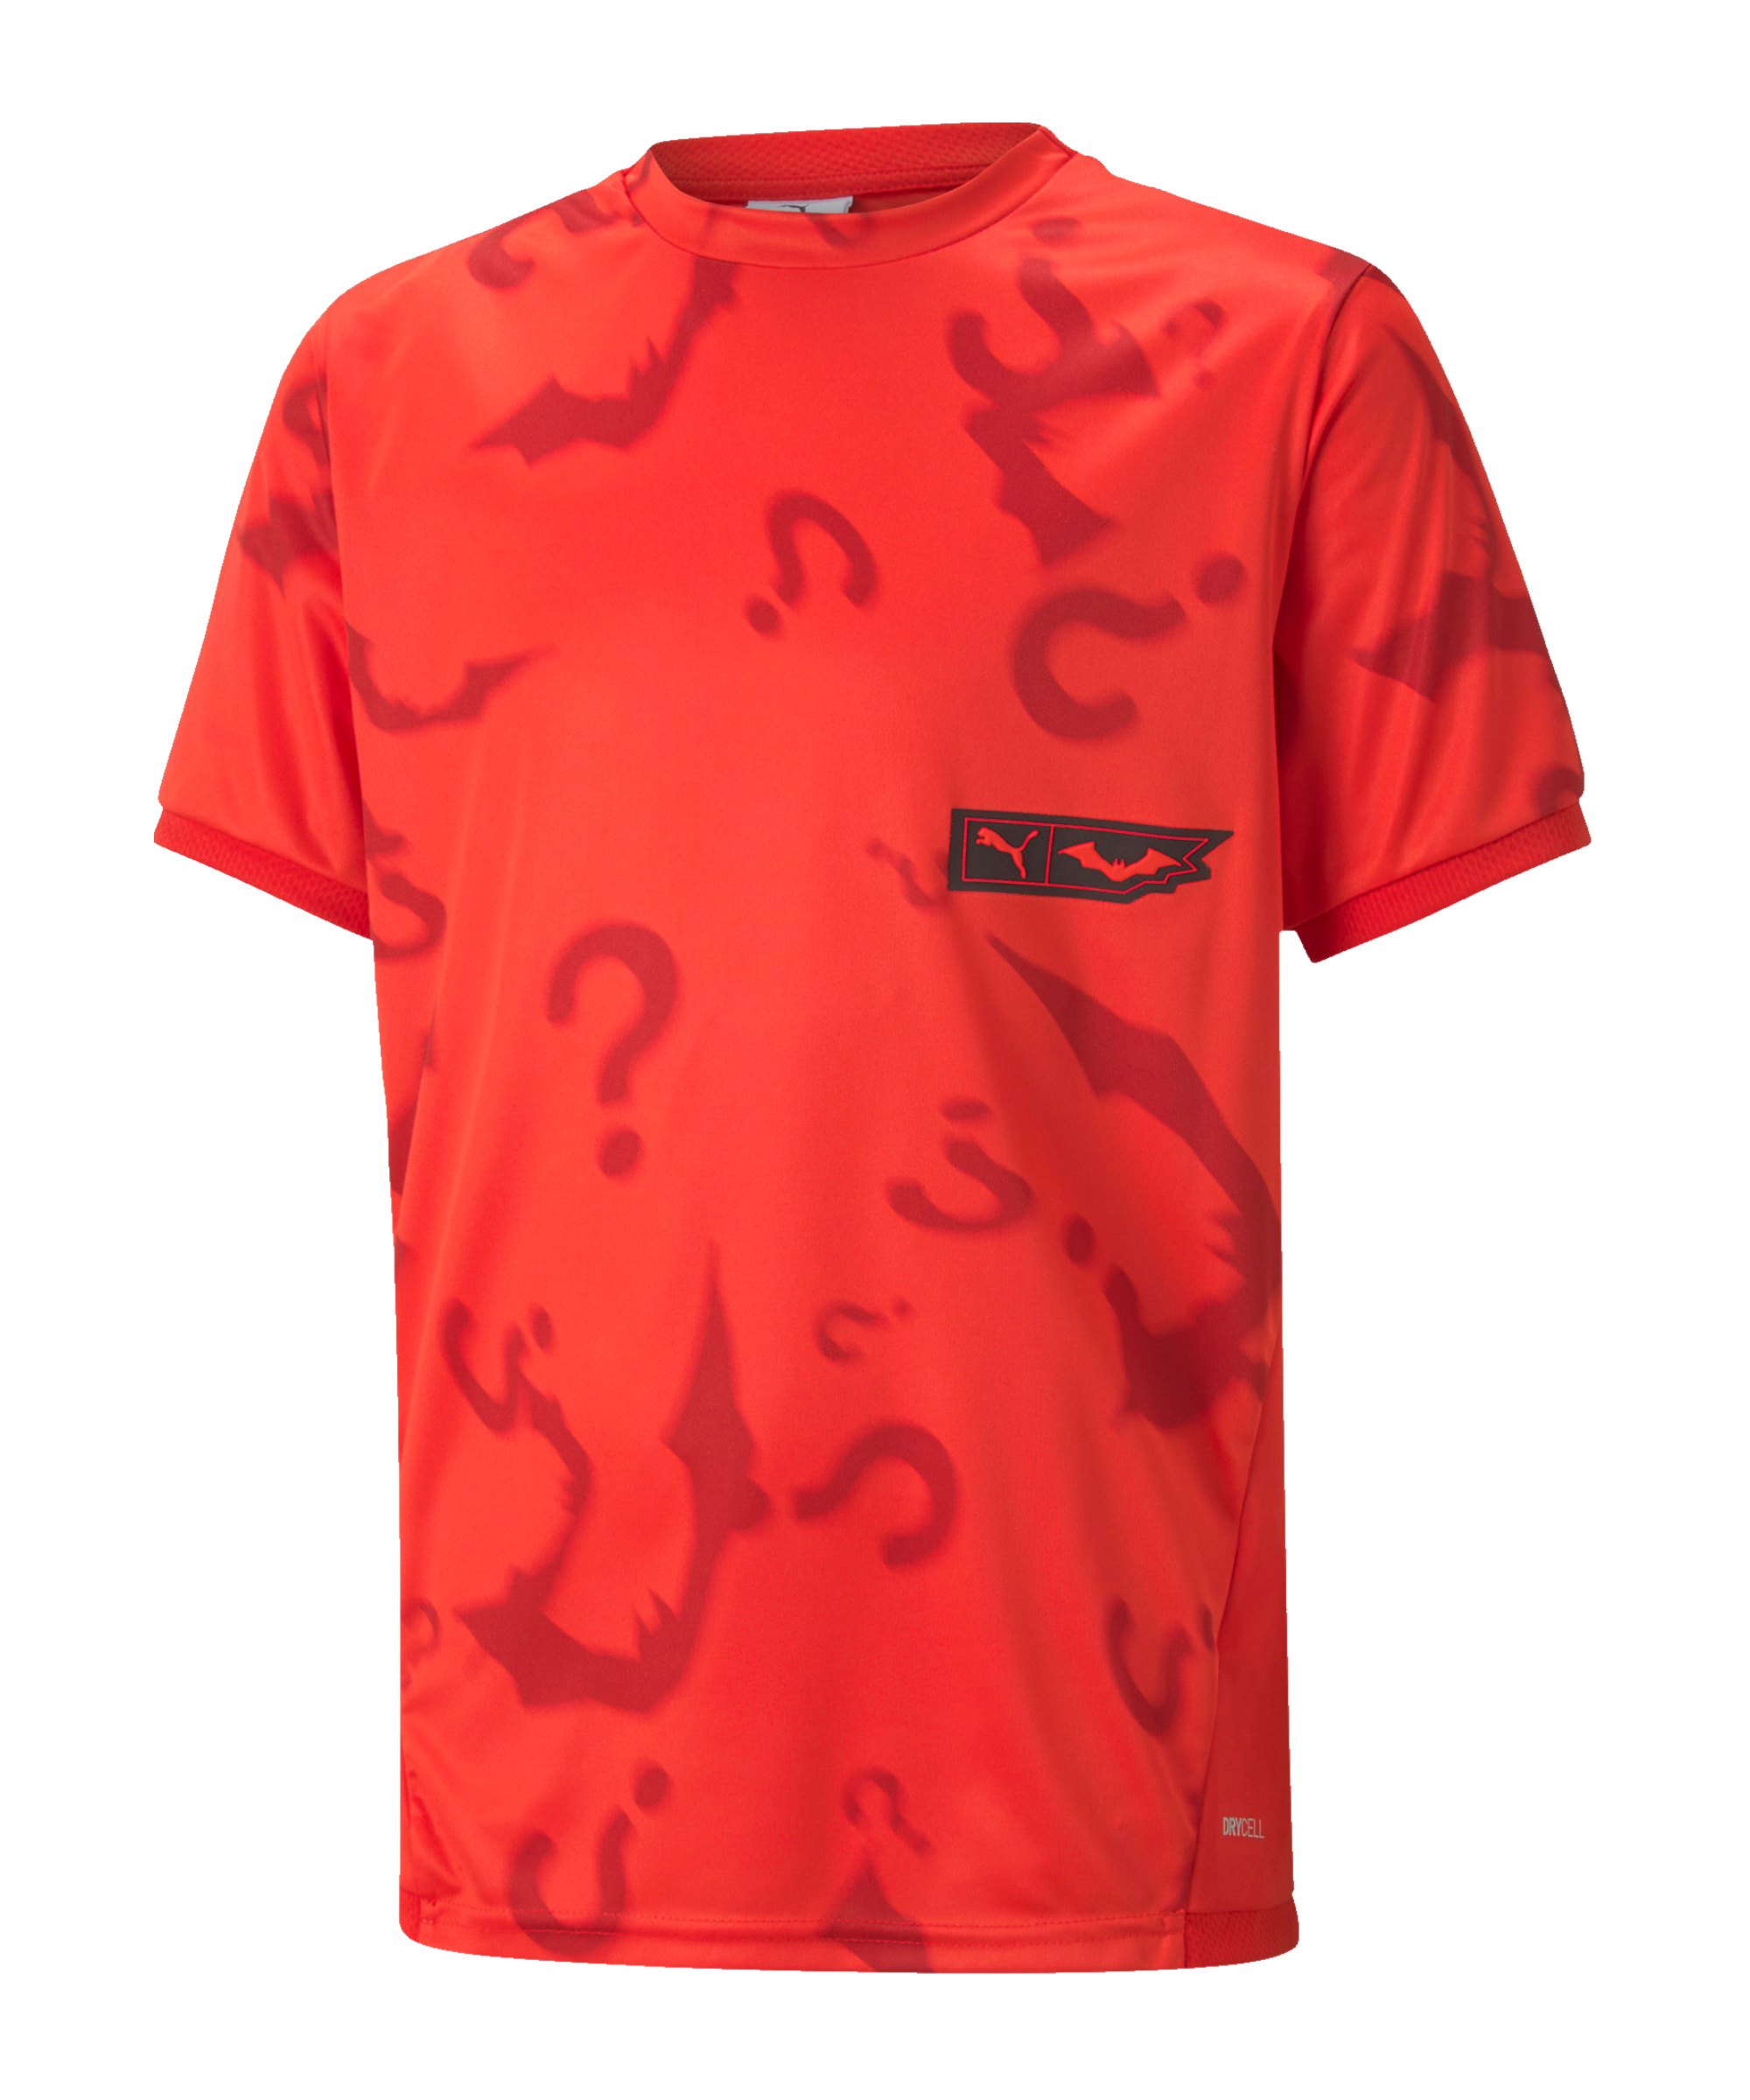 PUMA X BATMAN Graphic T-Shirt Kids Rot F01 - rot